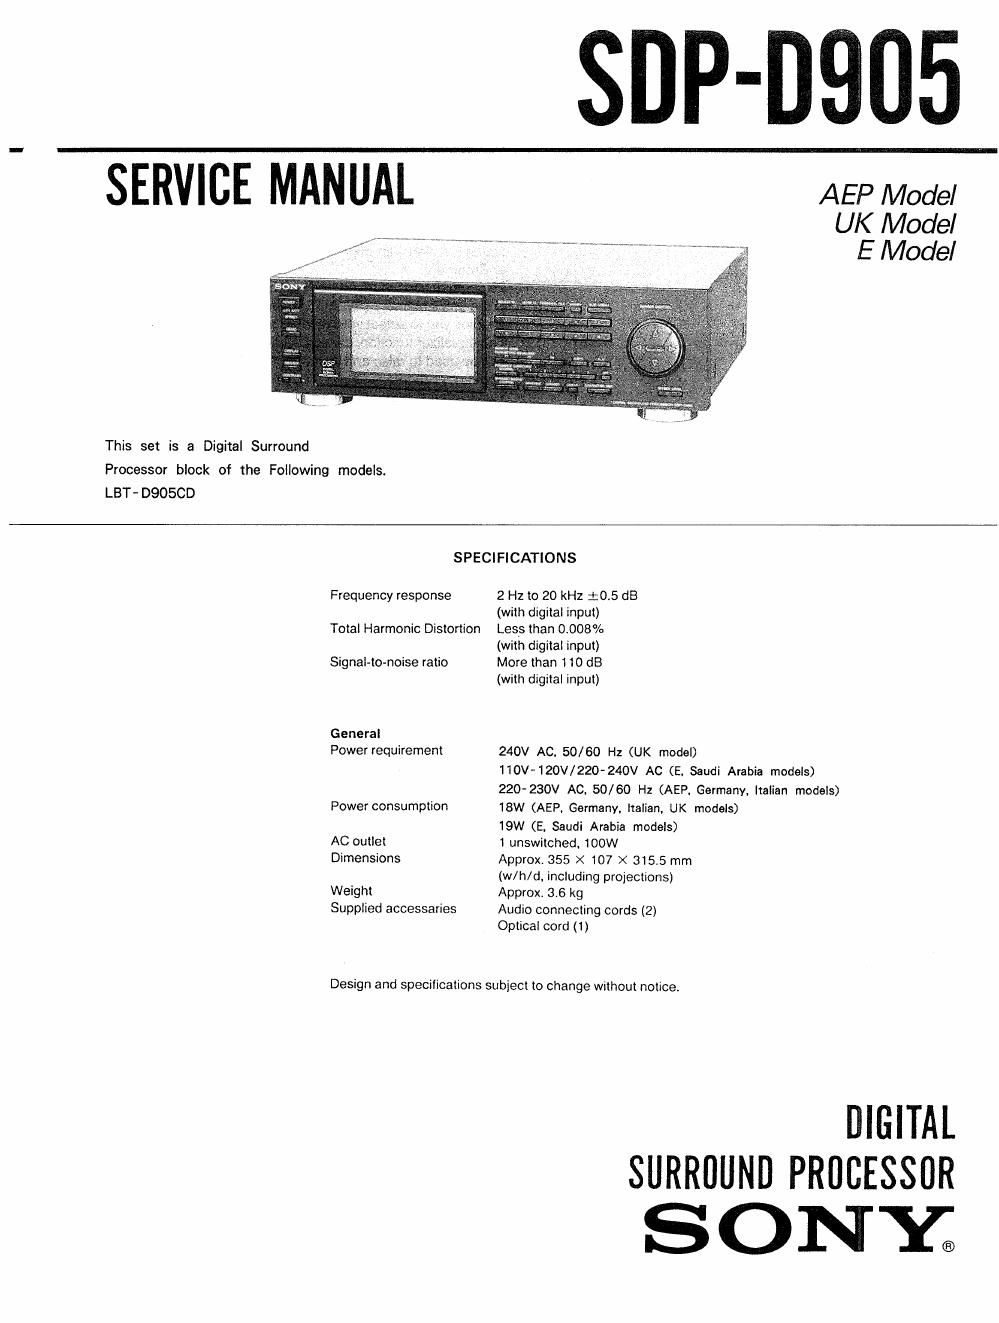 sony sdp 905 service manual